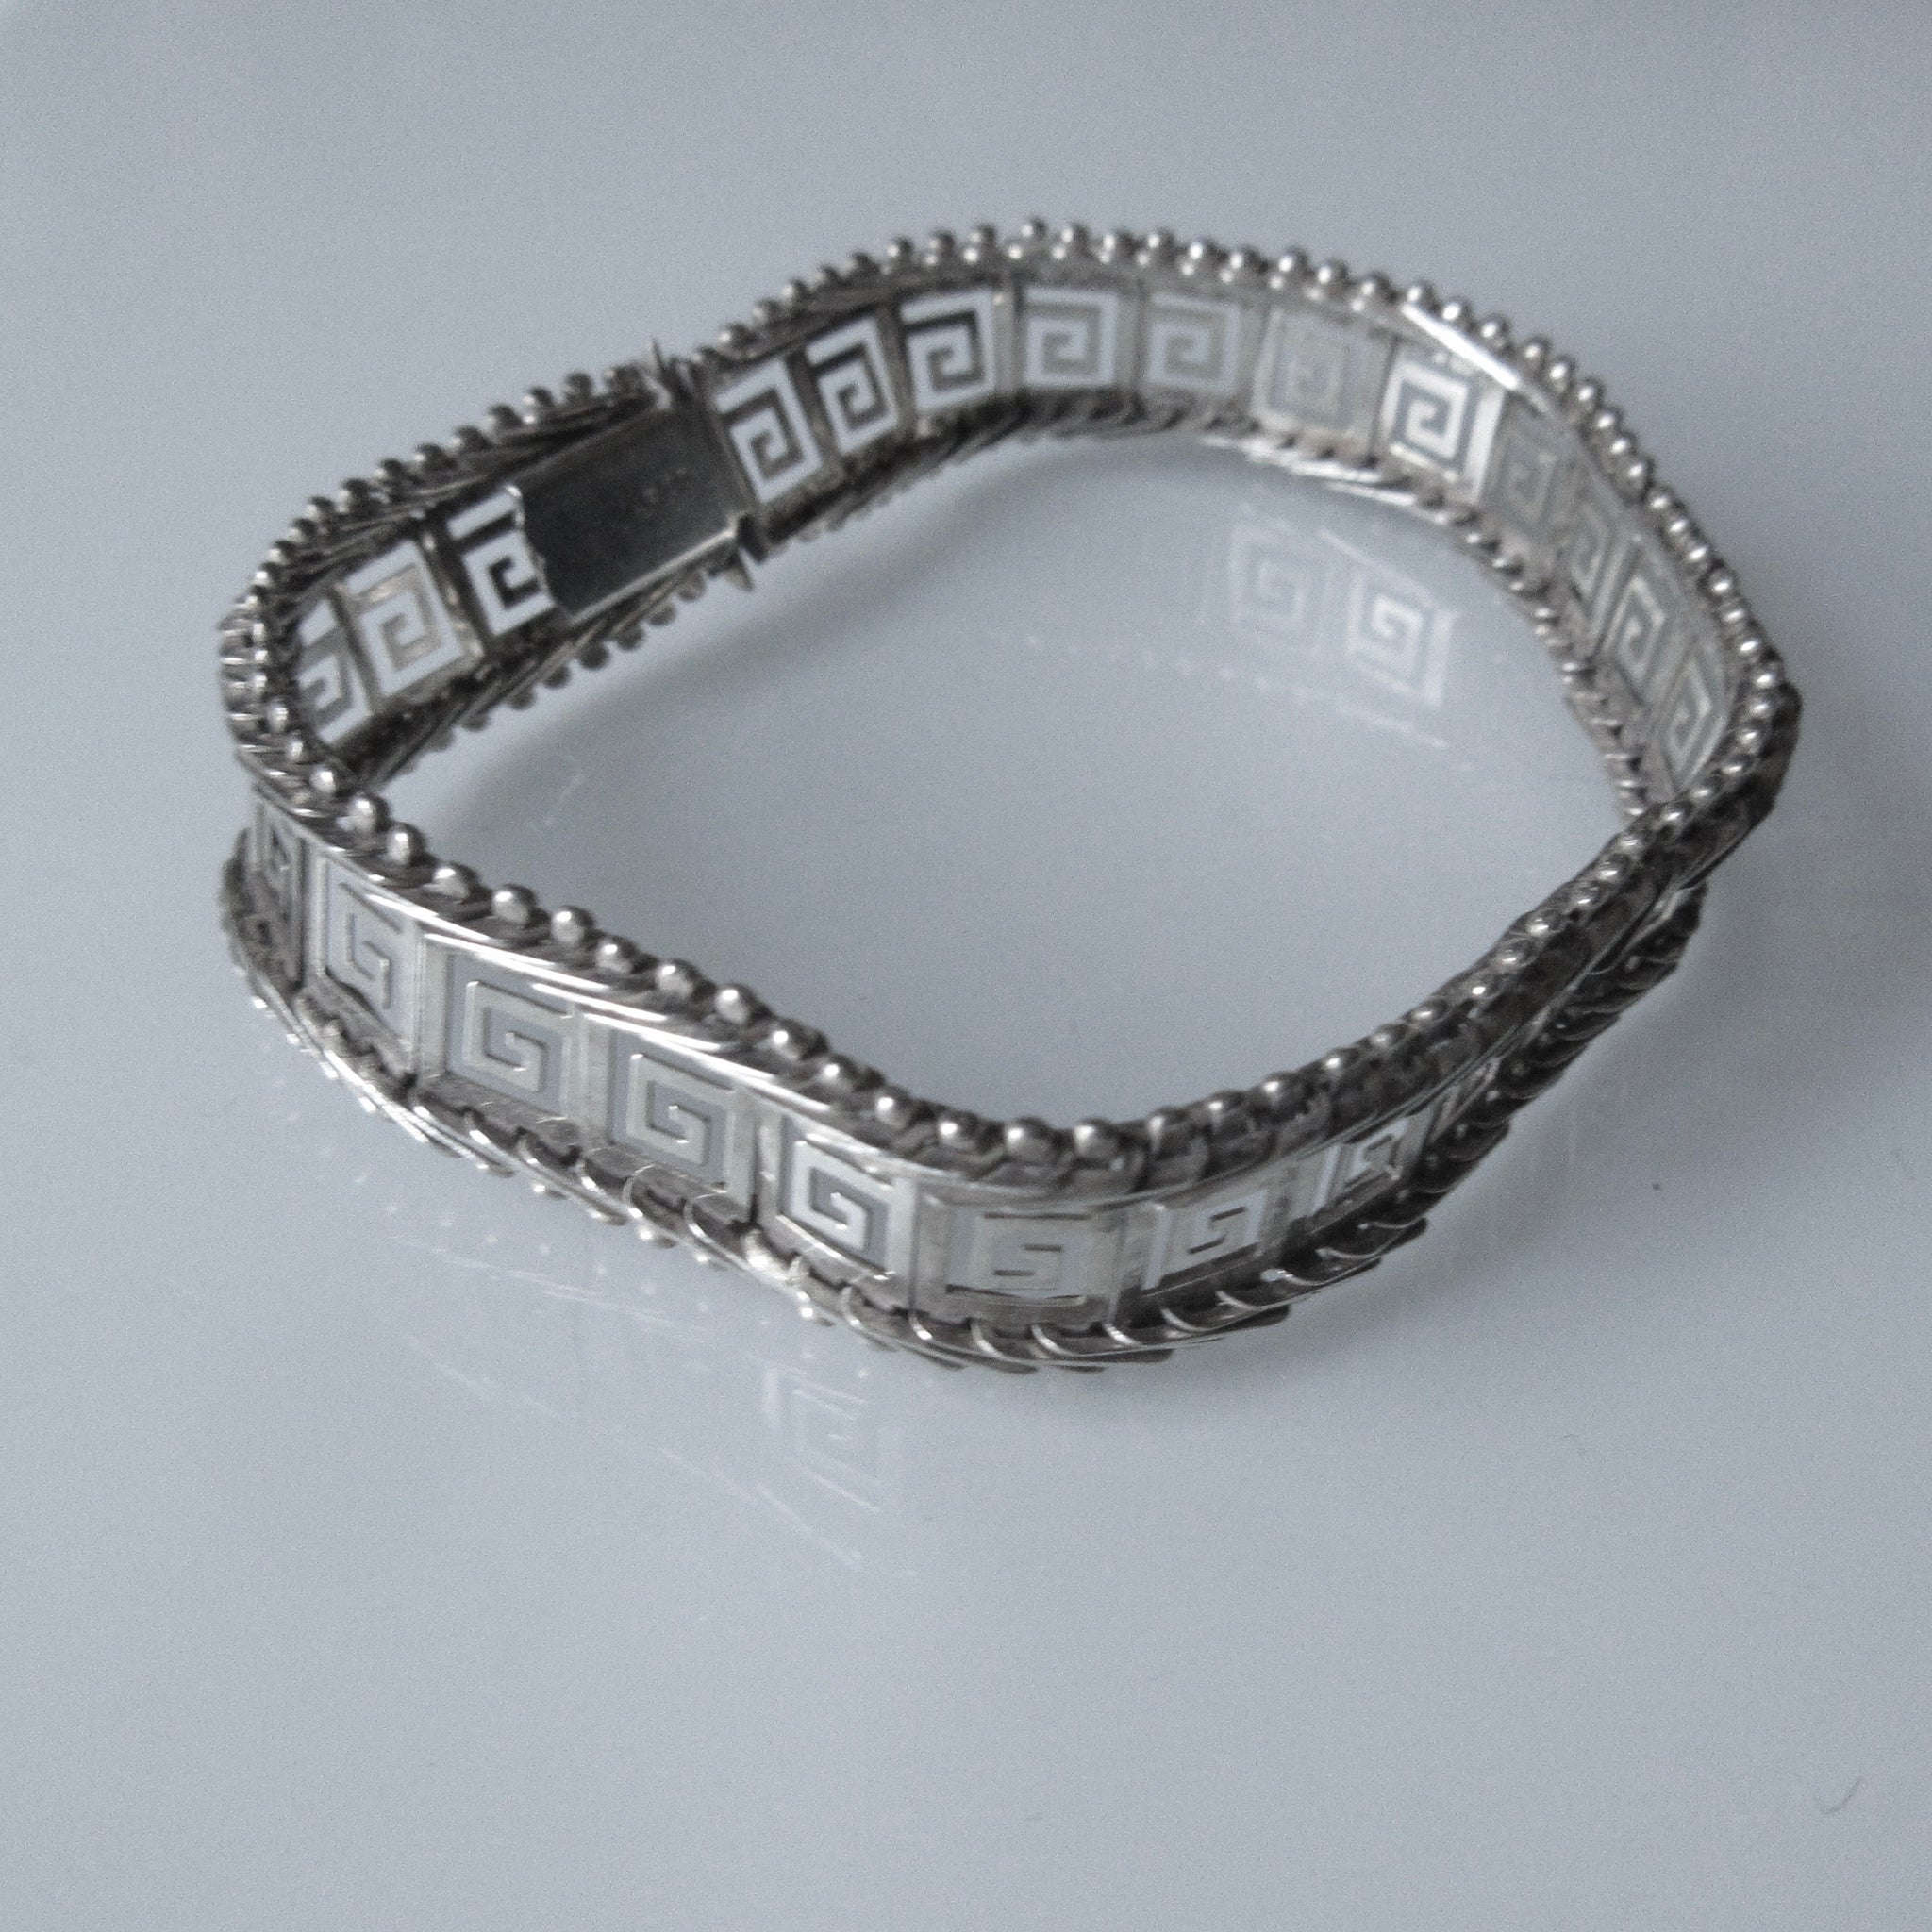 Greek Key Sterling Silver Bracelet